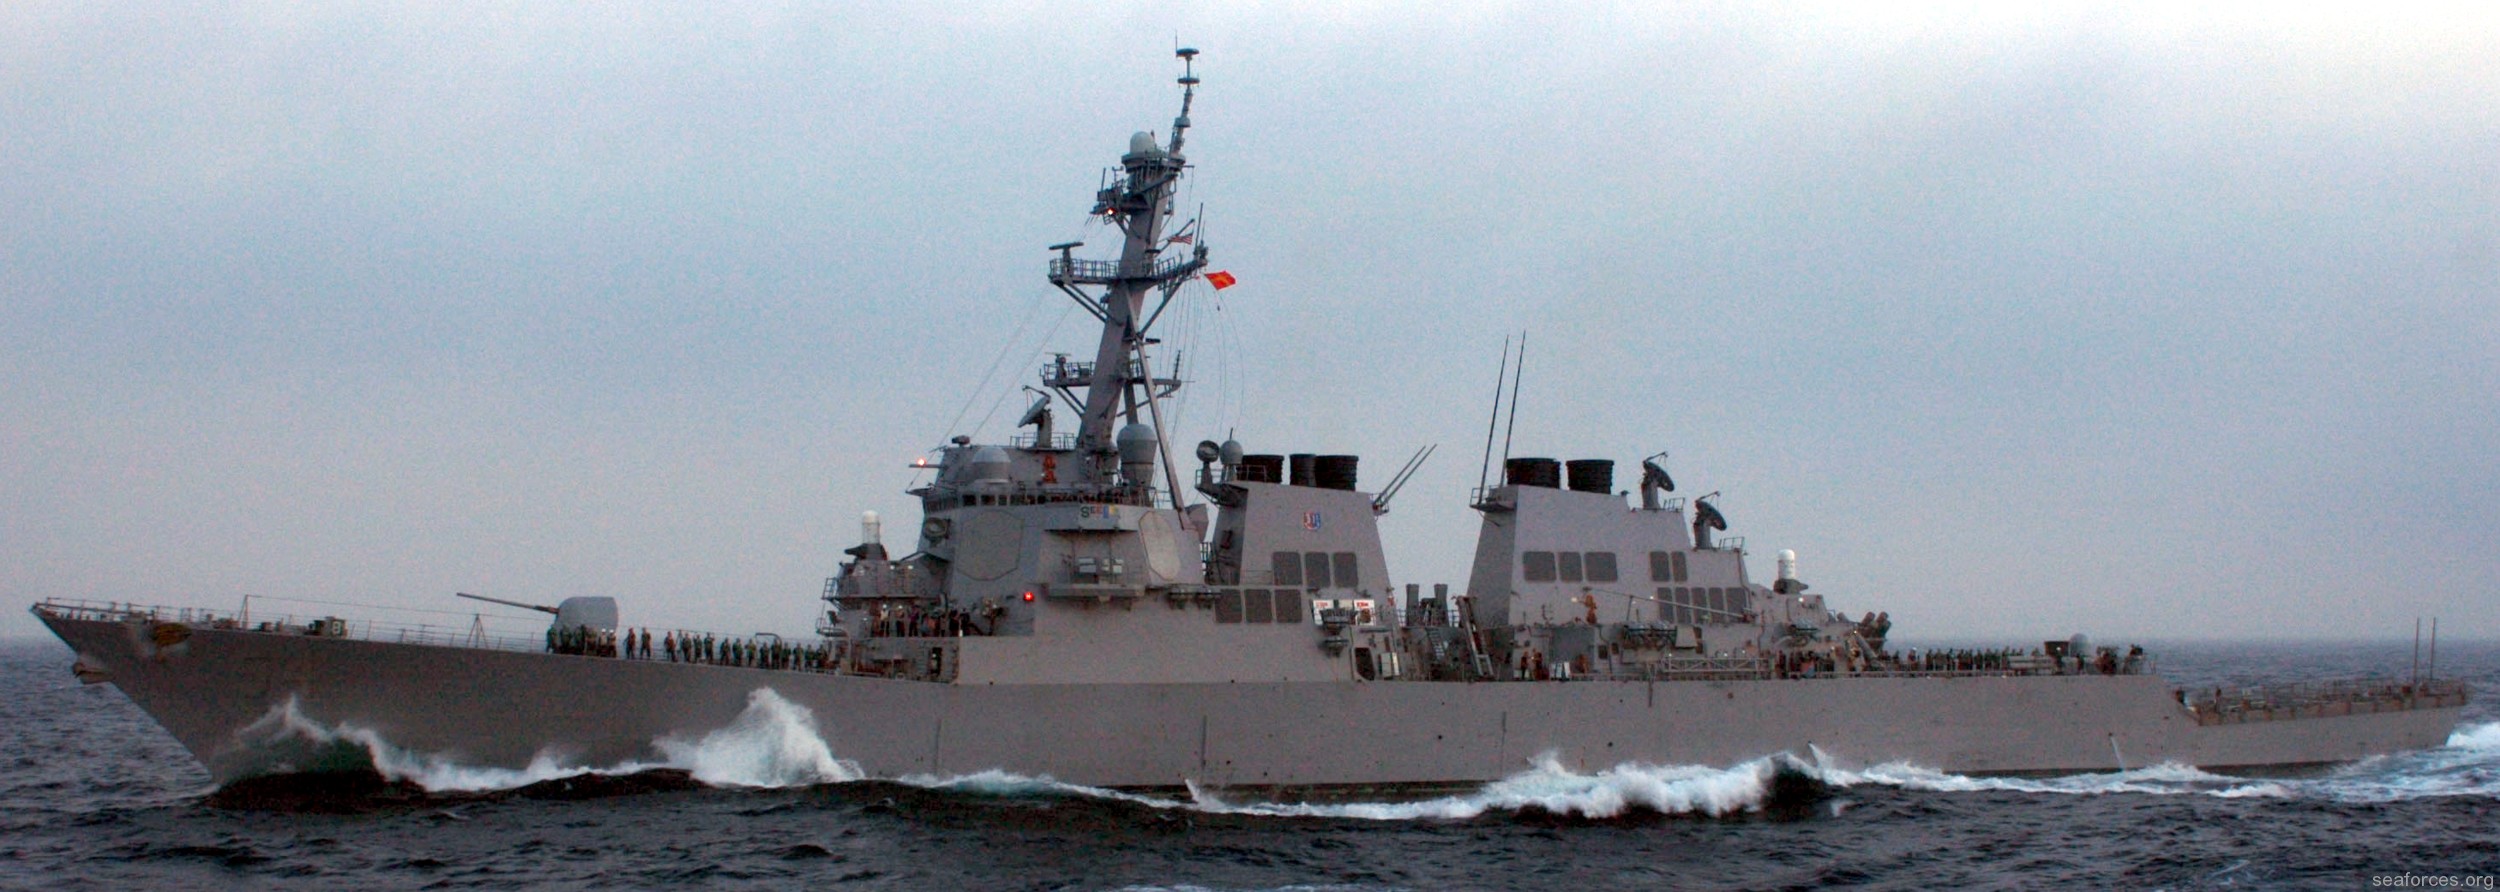 ddg-54 uss curtis wilbur destroyer us navy 71